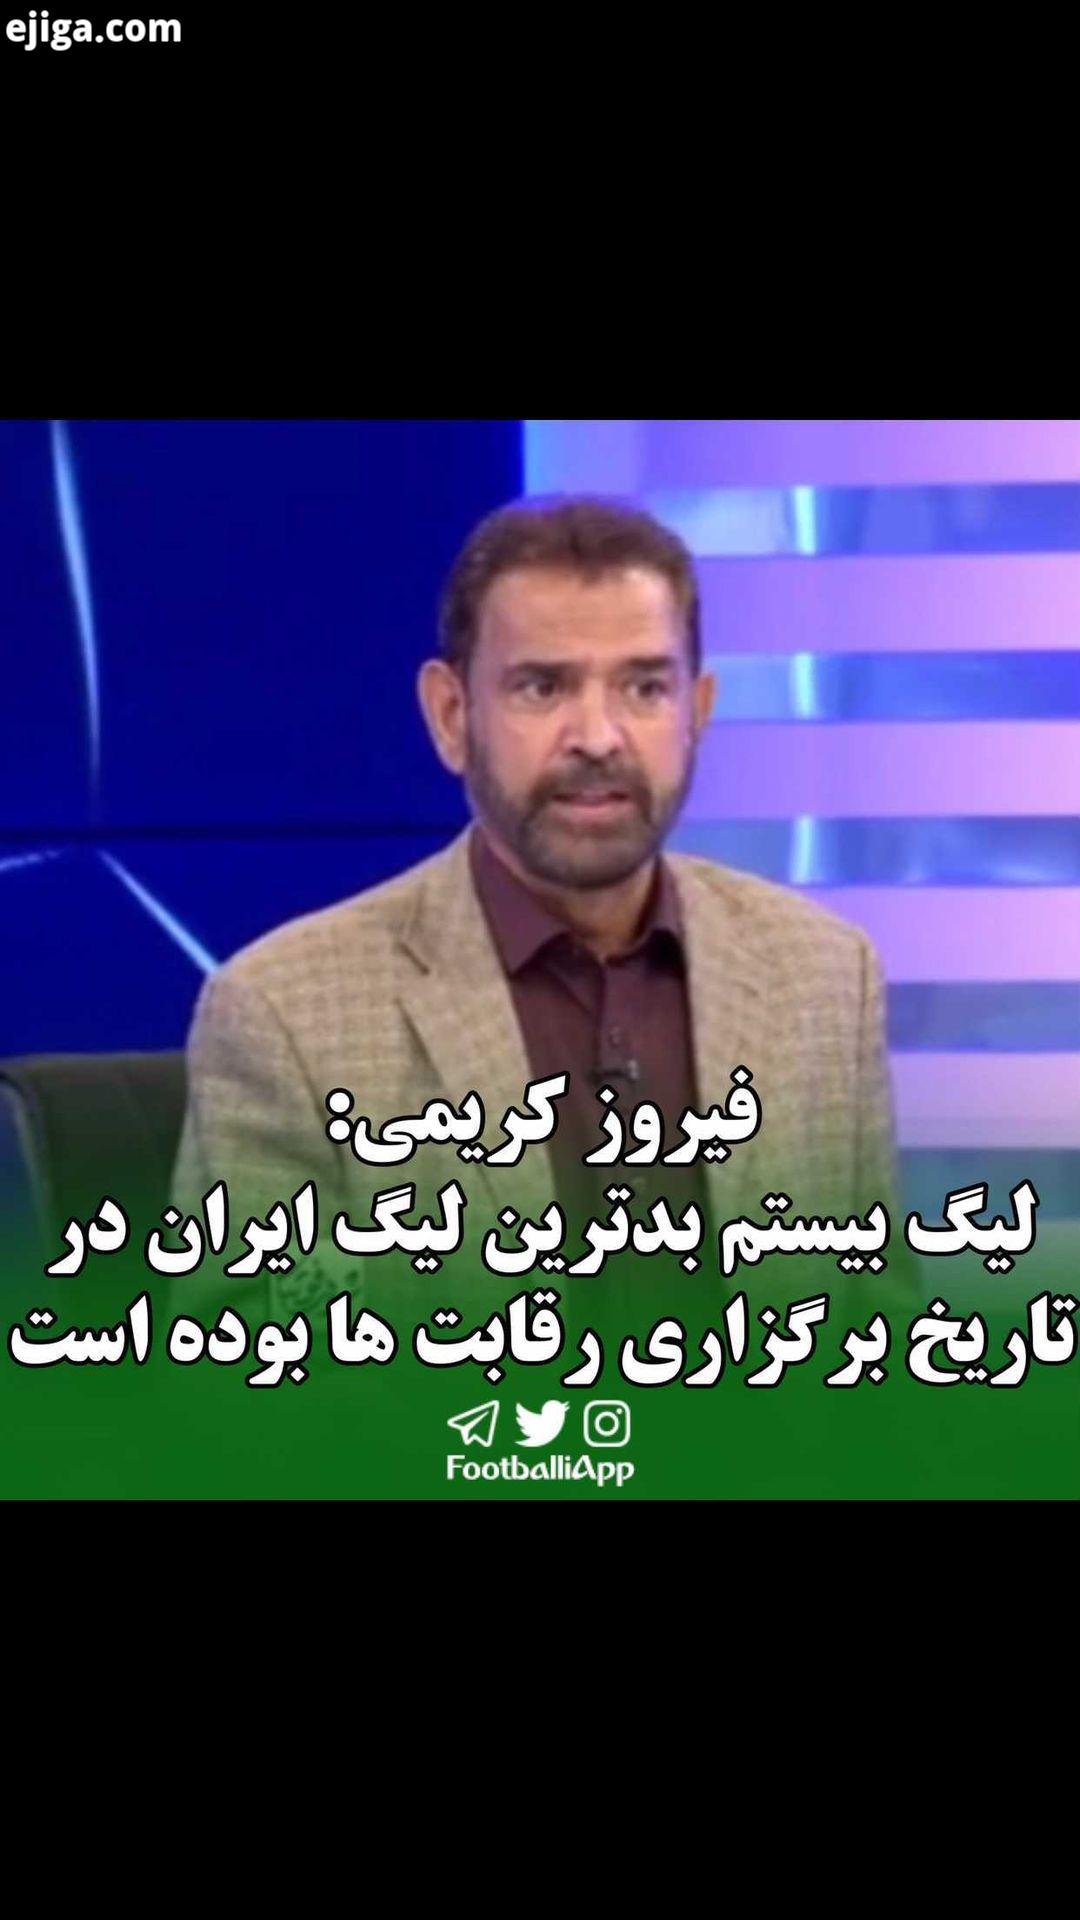 فیروز کریمی: لیگ بیستم بدترین لیگ ایران از لحاظ کیفیت در تاریخ برگزاری رقابت ها بوده است ویدیوهای ور